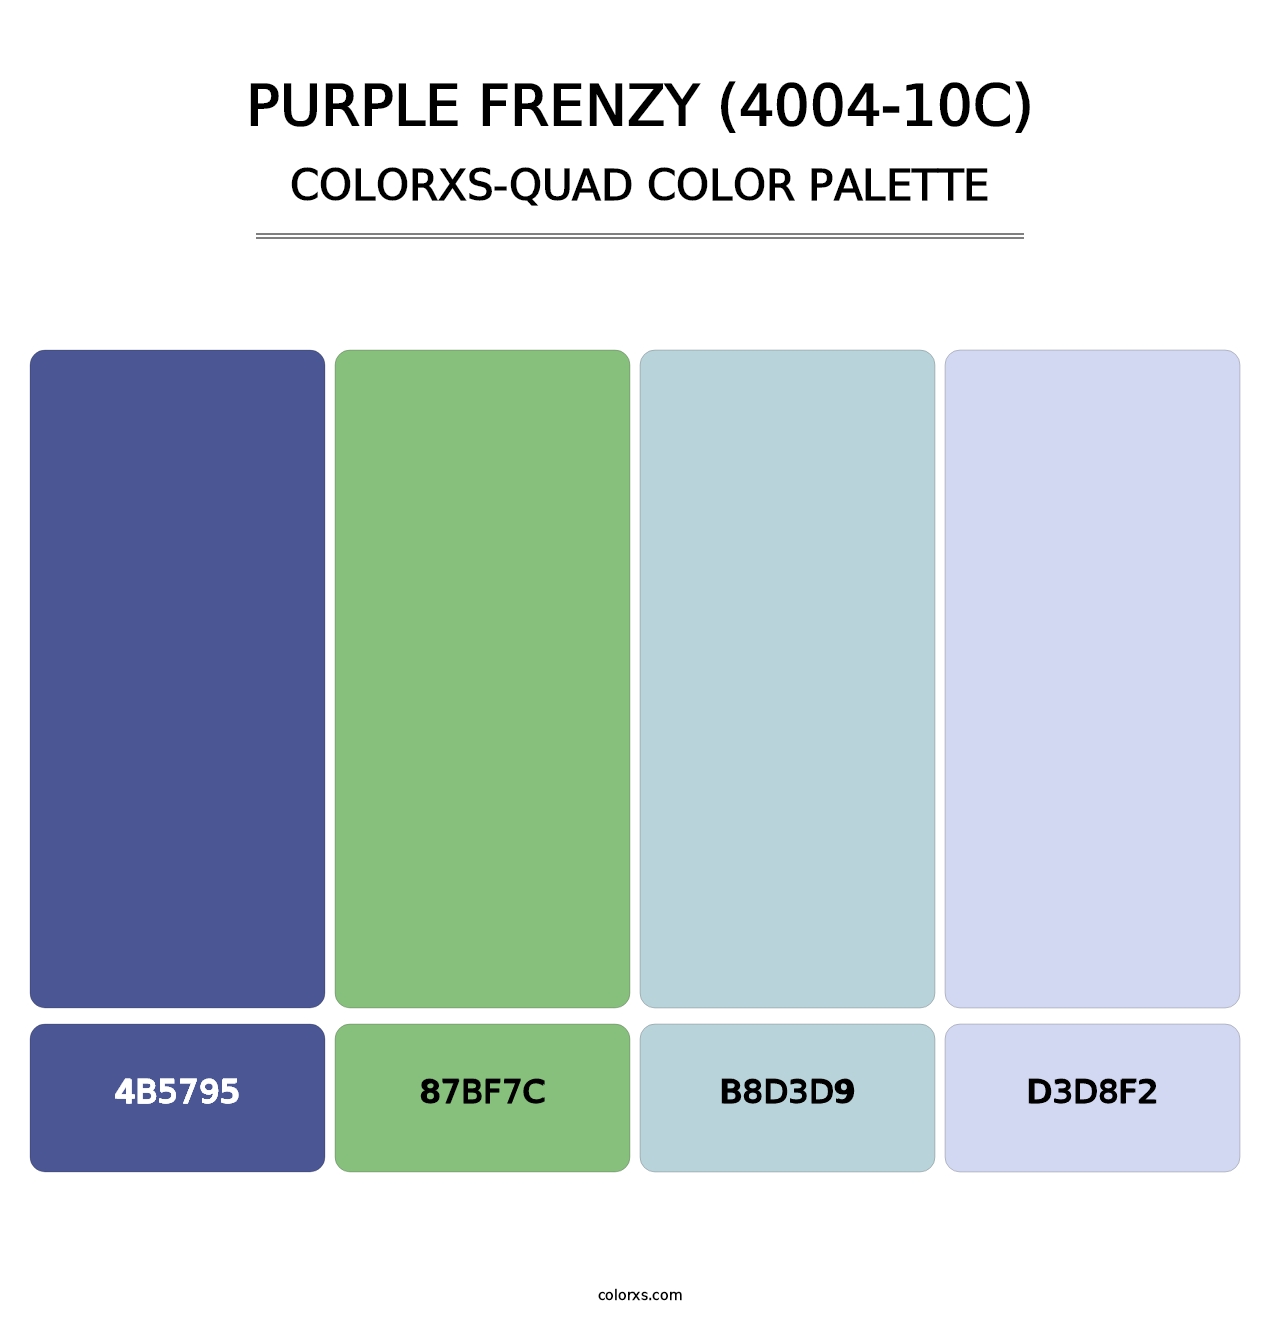 Purple Frenzy (4004-10C) - Colorxs Quad Palette